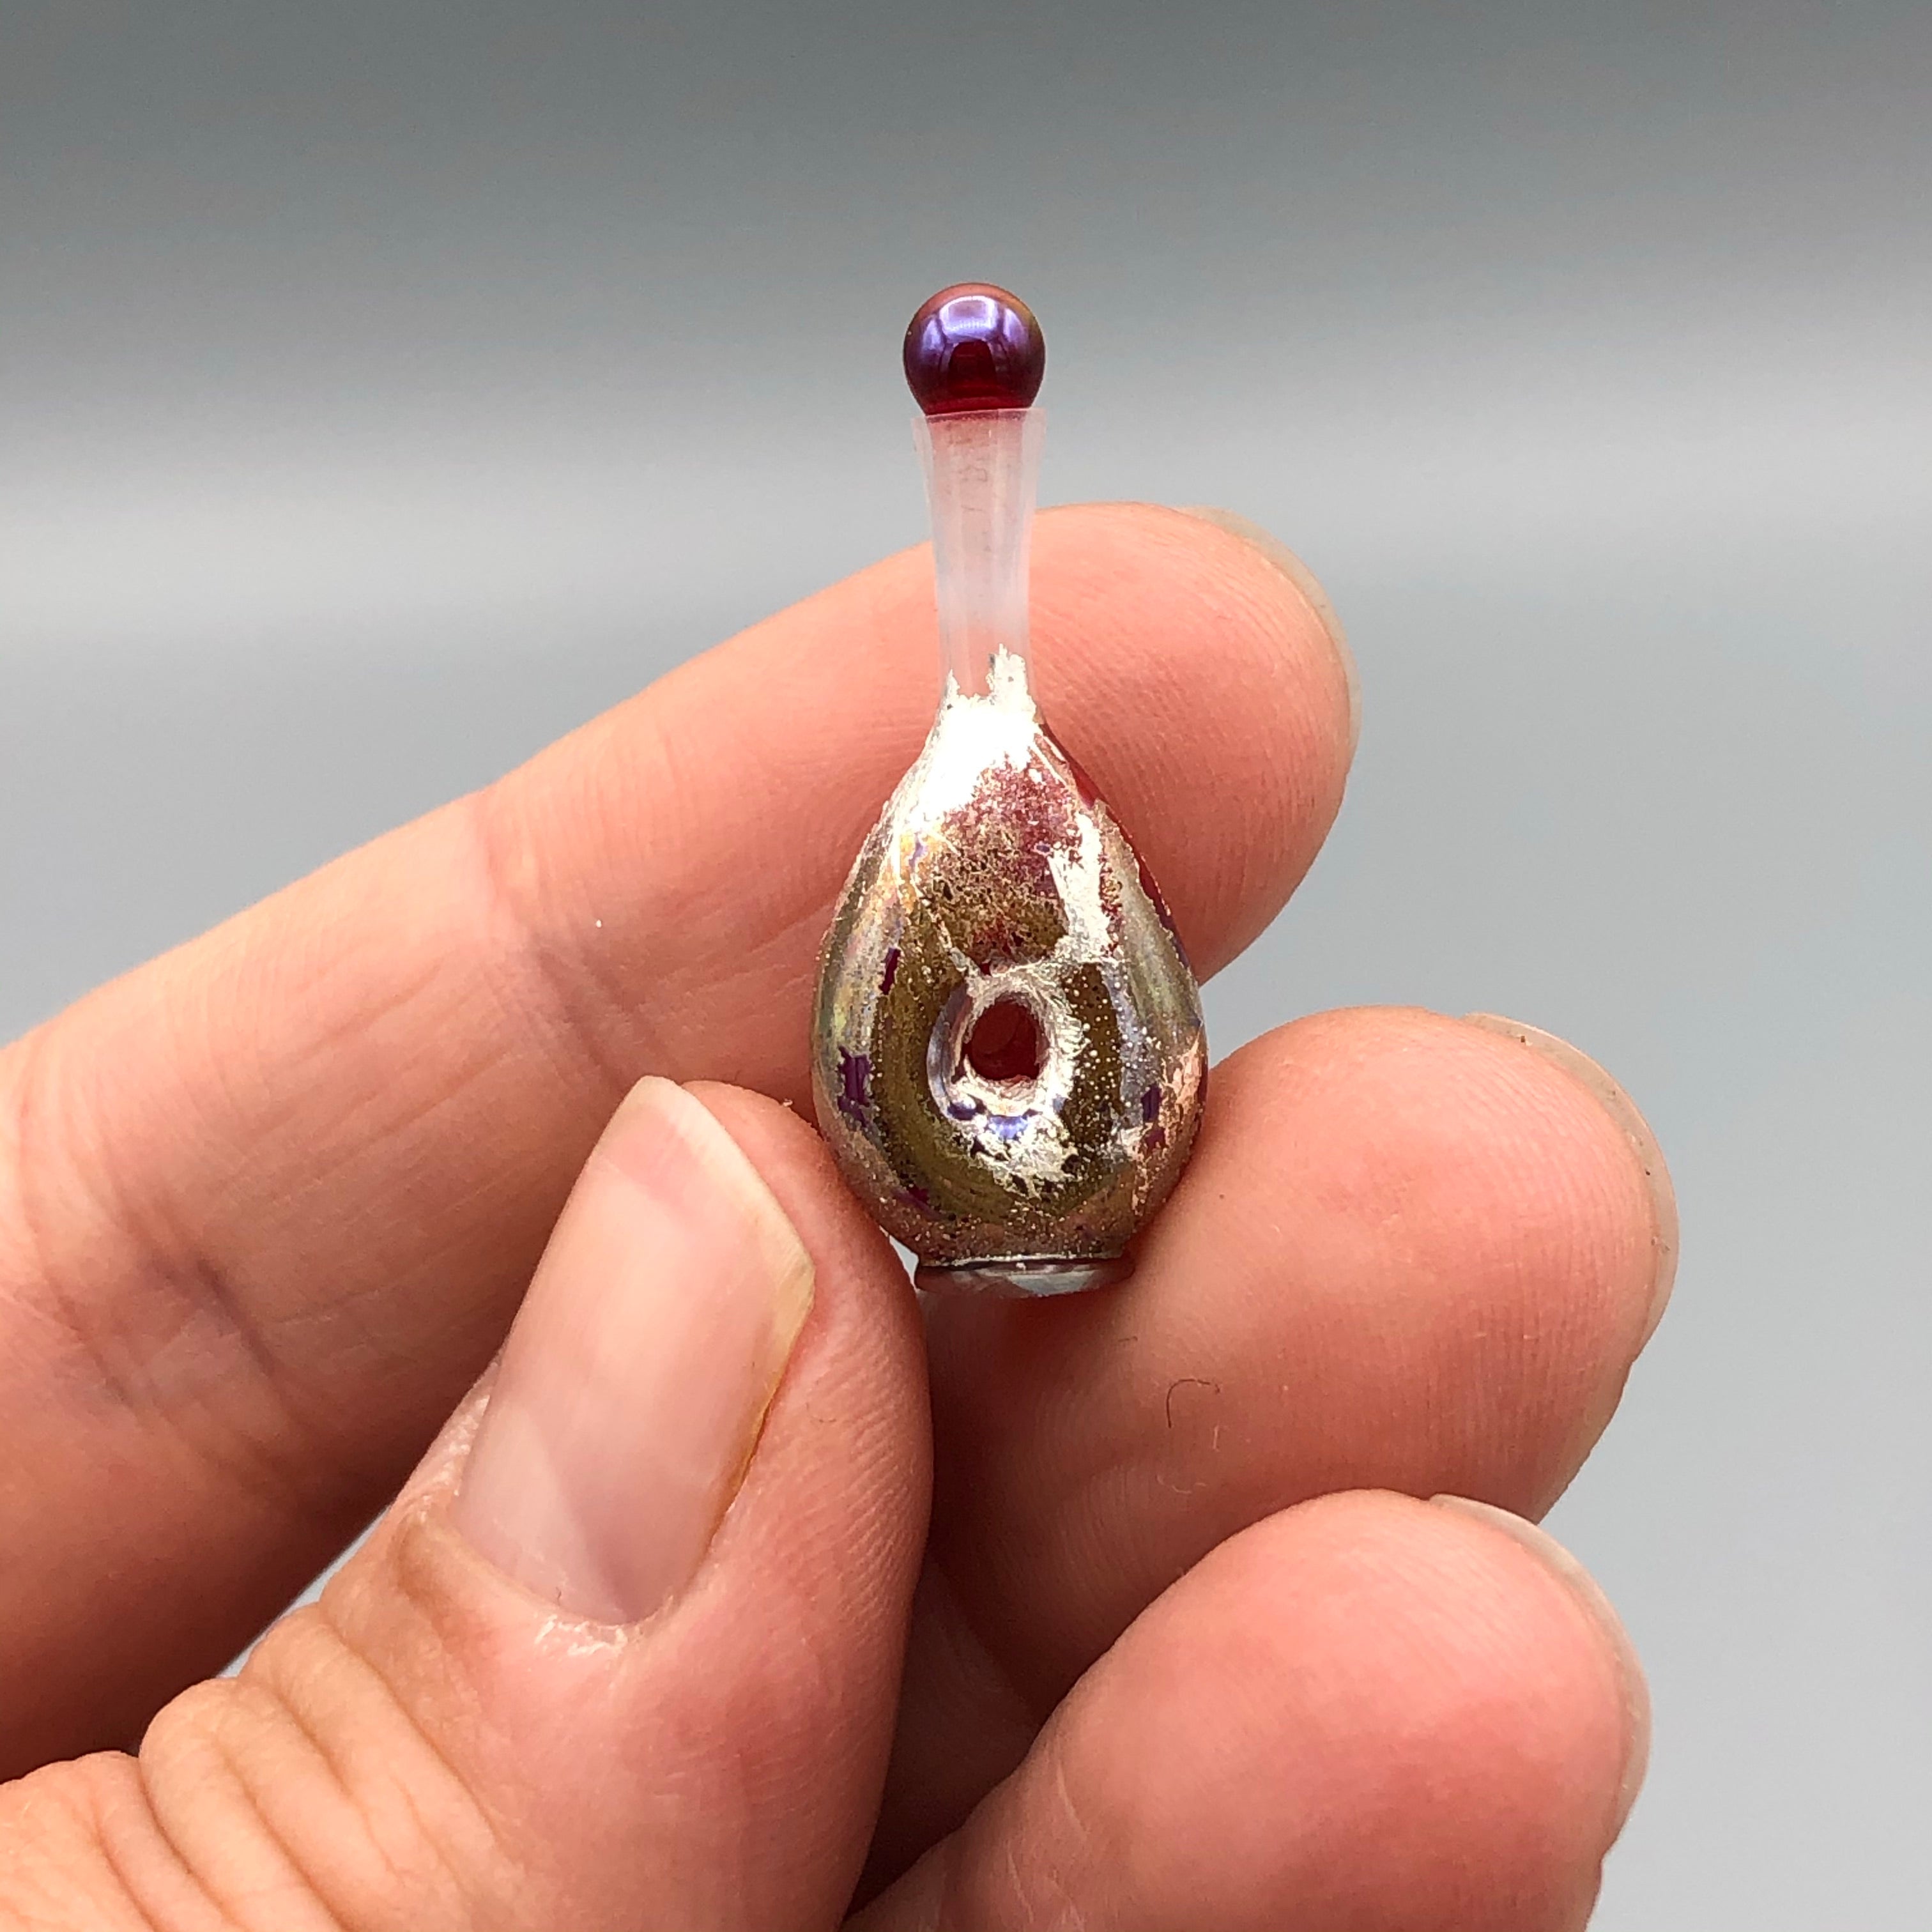 Miniatura de Cristal Jarrón con Tapón